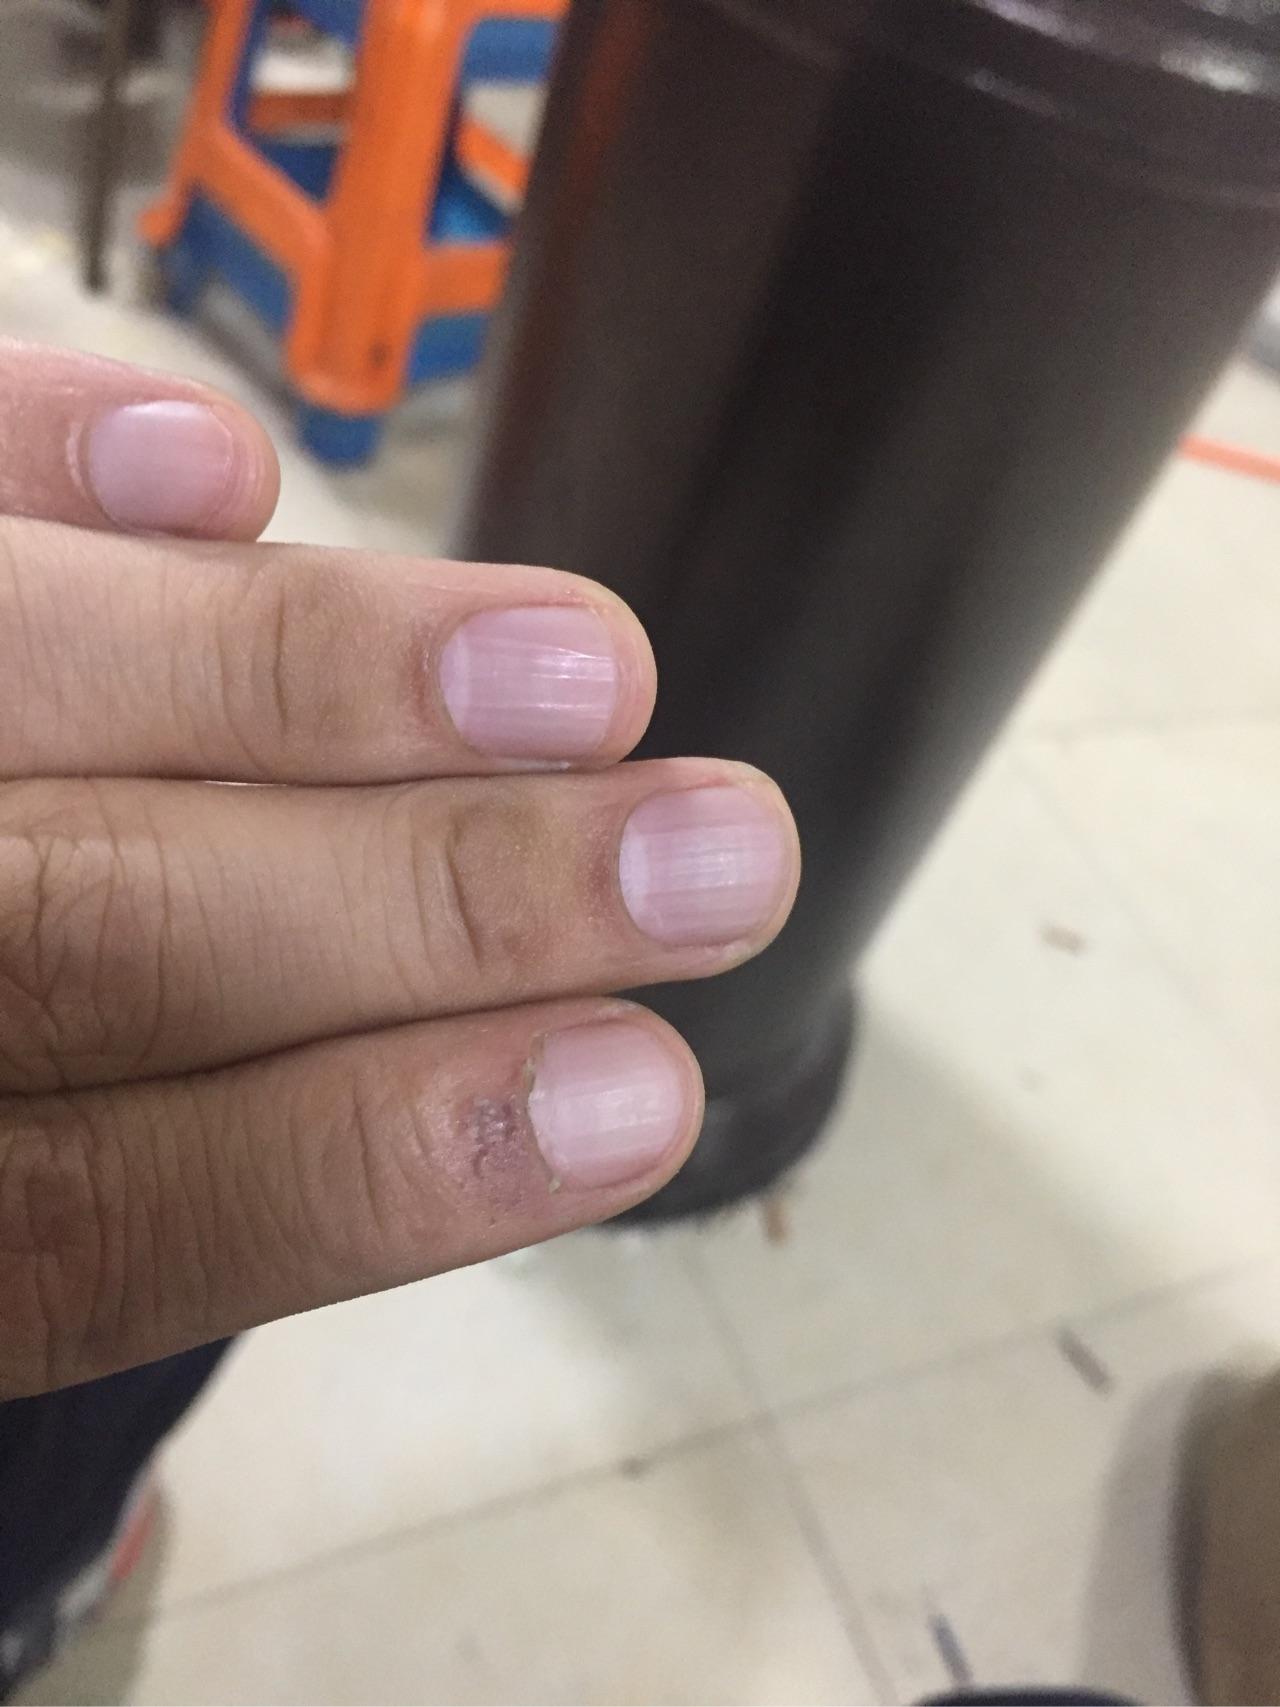 指甲有竖纹究竟是什么原因?总体颜色有点偏紫色,怎么回事? 